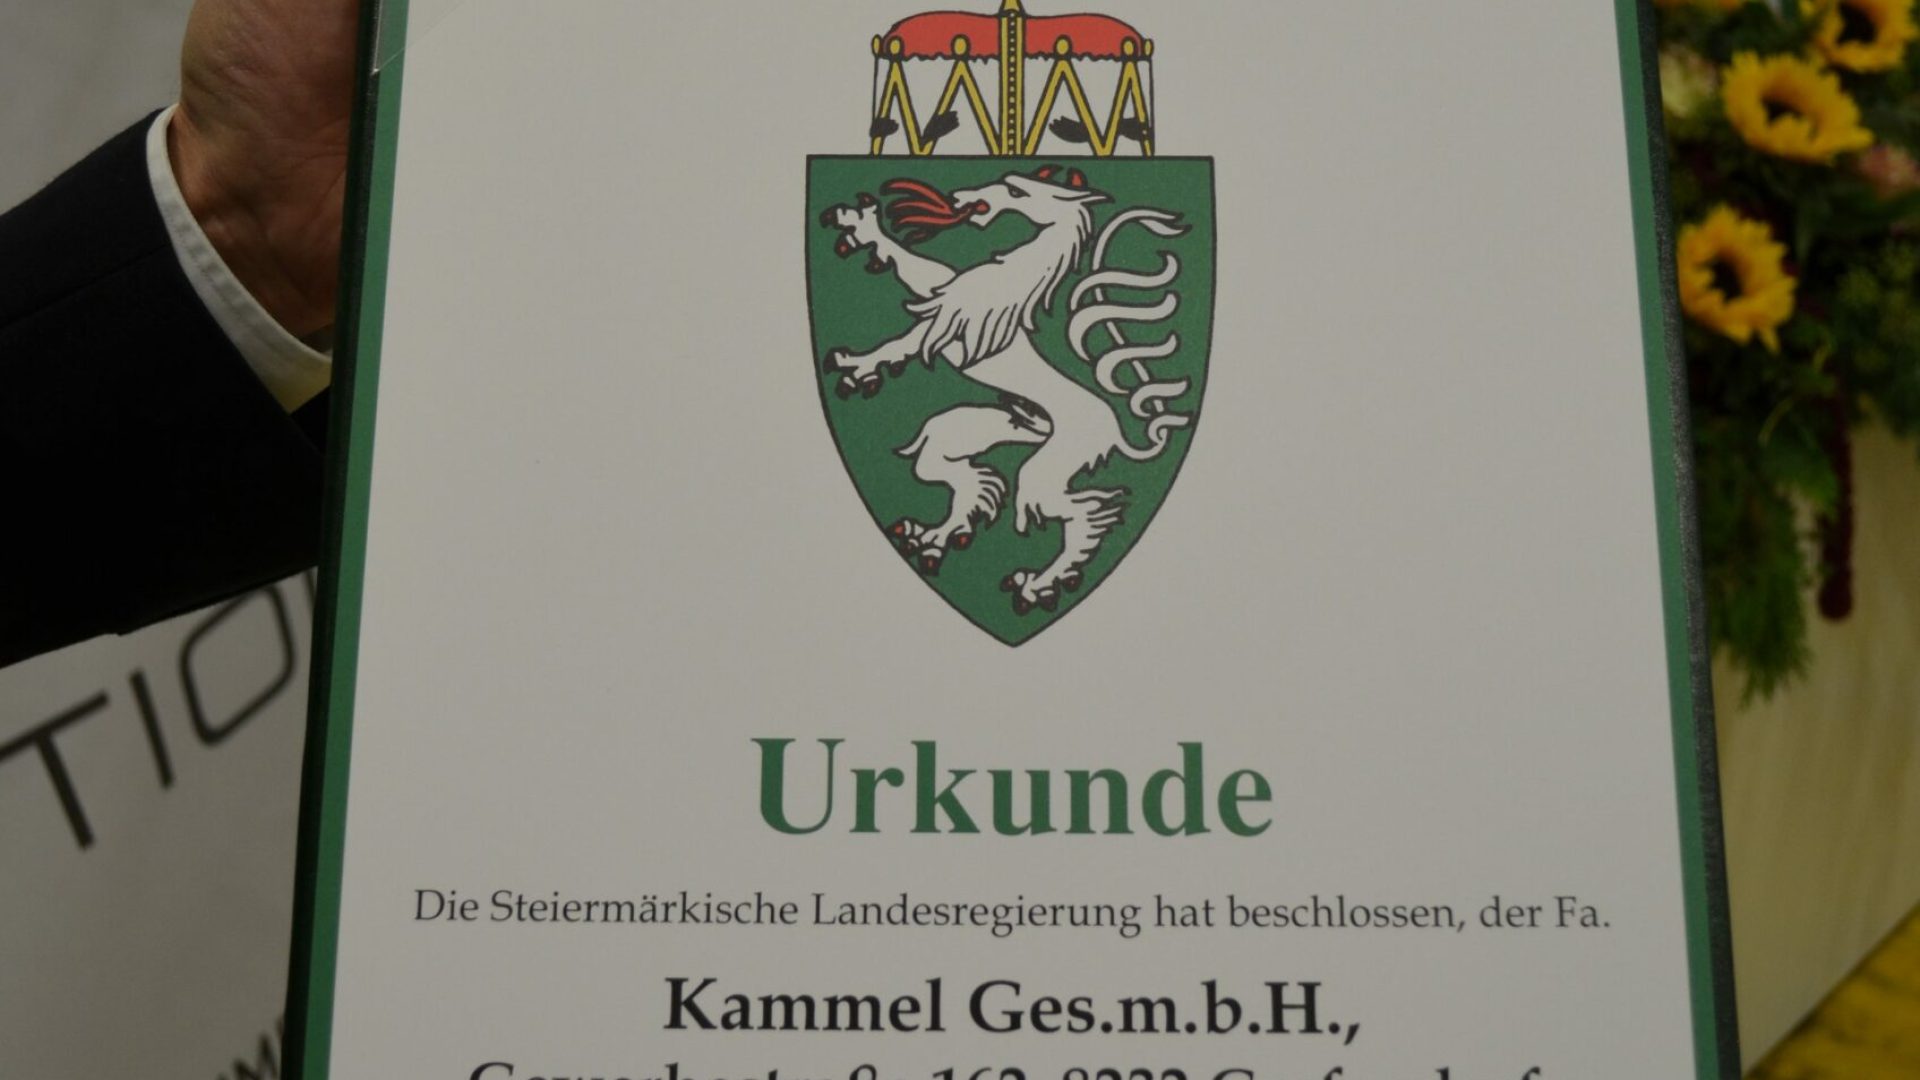 Verleihung-steirisches-Landeswappen-Kammel_09-10-2019_C-Zillinger-Kirchdorfer-14-e1570695662245